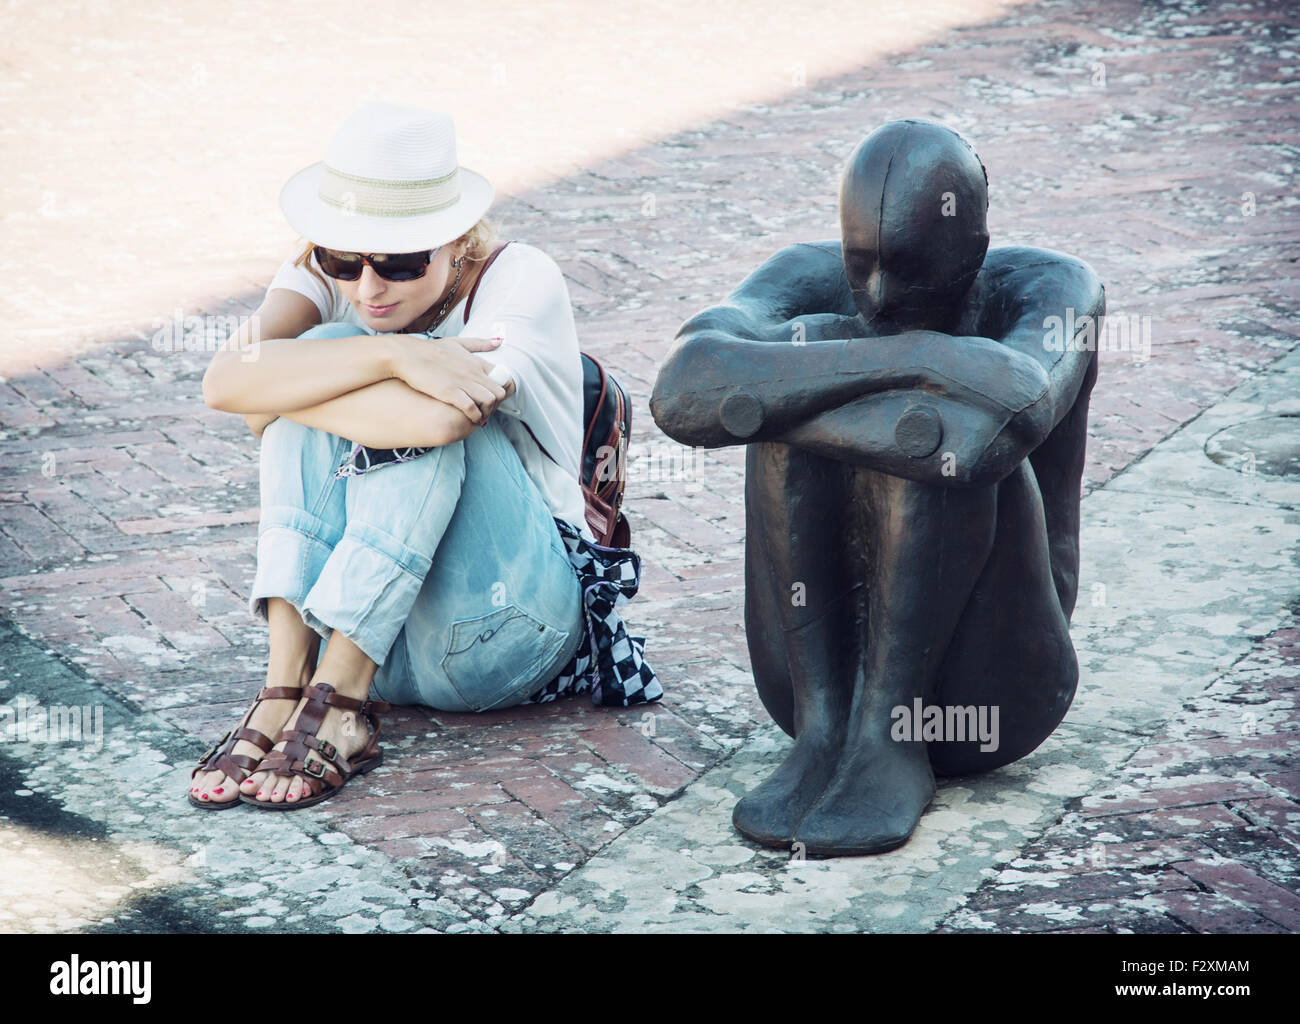 Junge Frau sitzt und die Pose der Eisen Statue imitiert. Forte di Belvedere, Florenz, Italien. Stockfoto